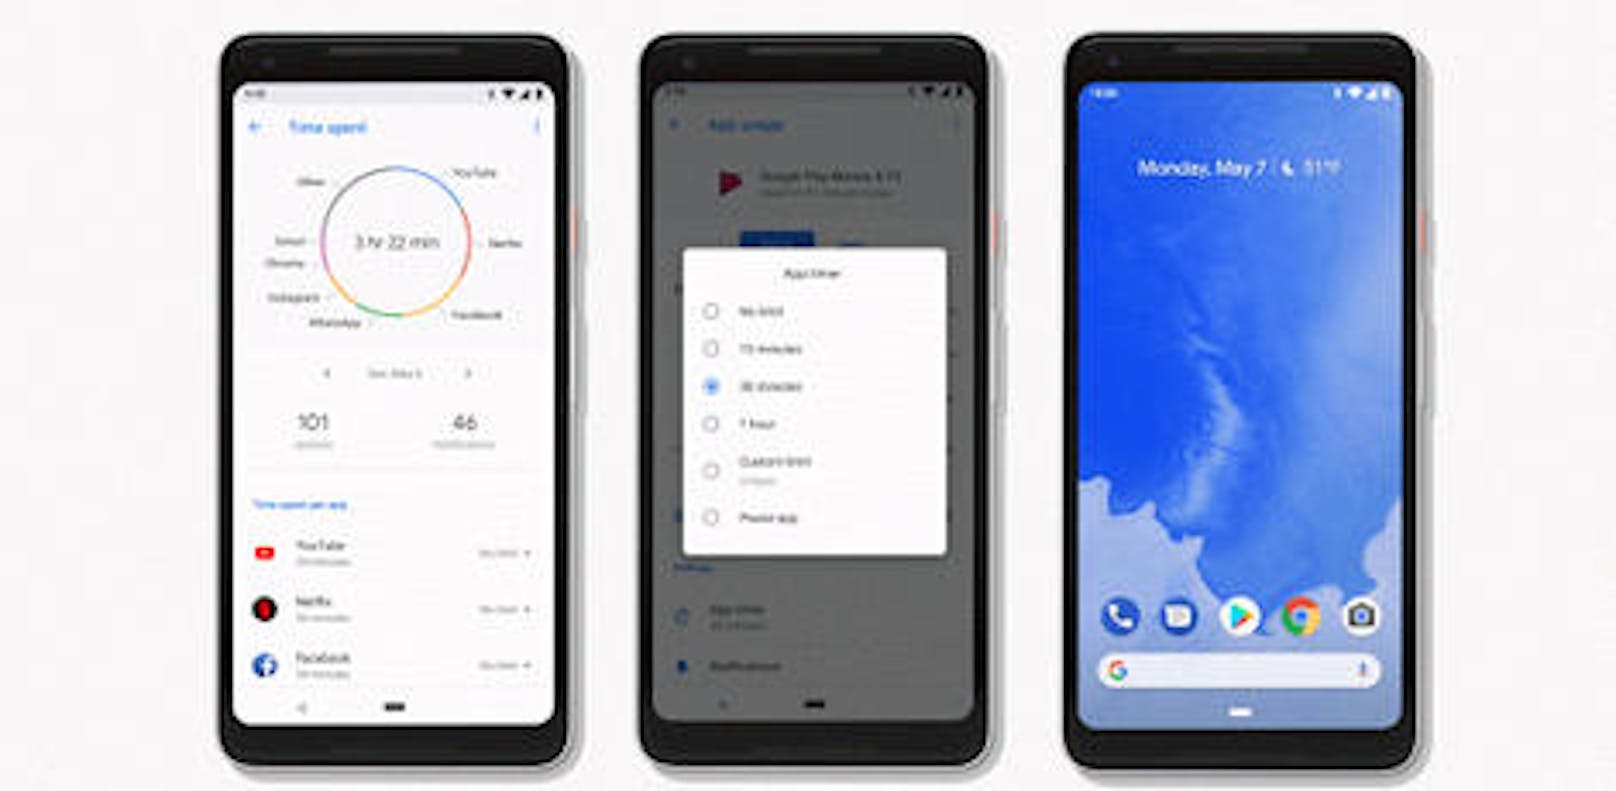 Android P ermöglicht die Navigation direkt vom Homescreen aus. Über die Home-Taste wird per Wisch nach oben eine Vollbild-Vorschau der zuletzt verwendeten Apps eingeblendet. Texterkennung und Vorschläge funktionieren neu auch in der Übersicht.